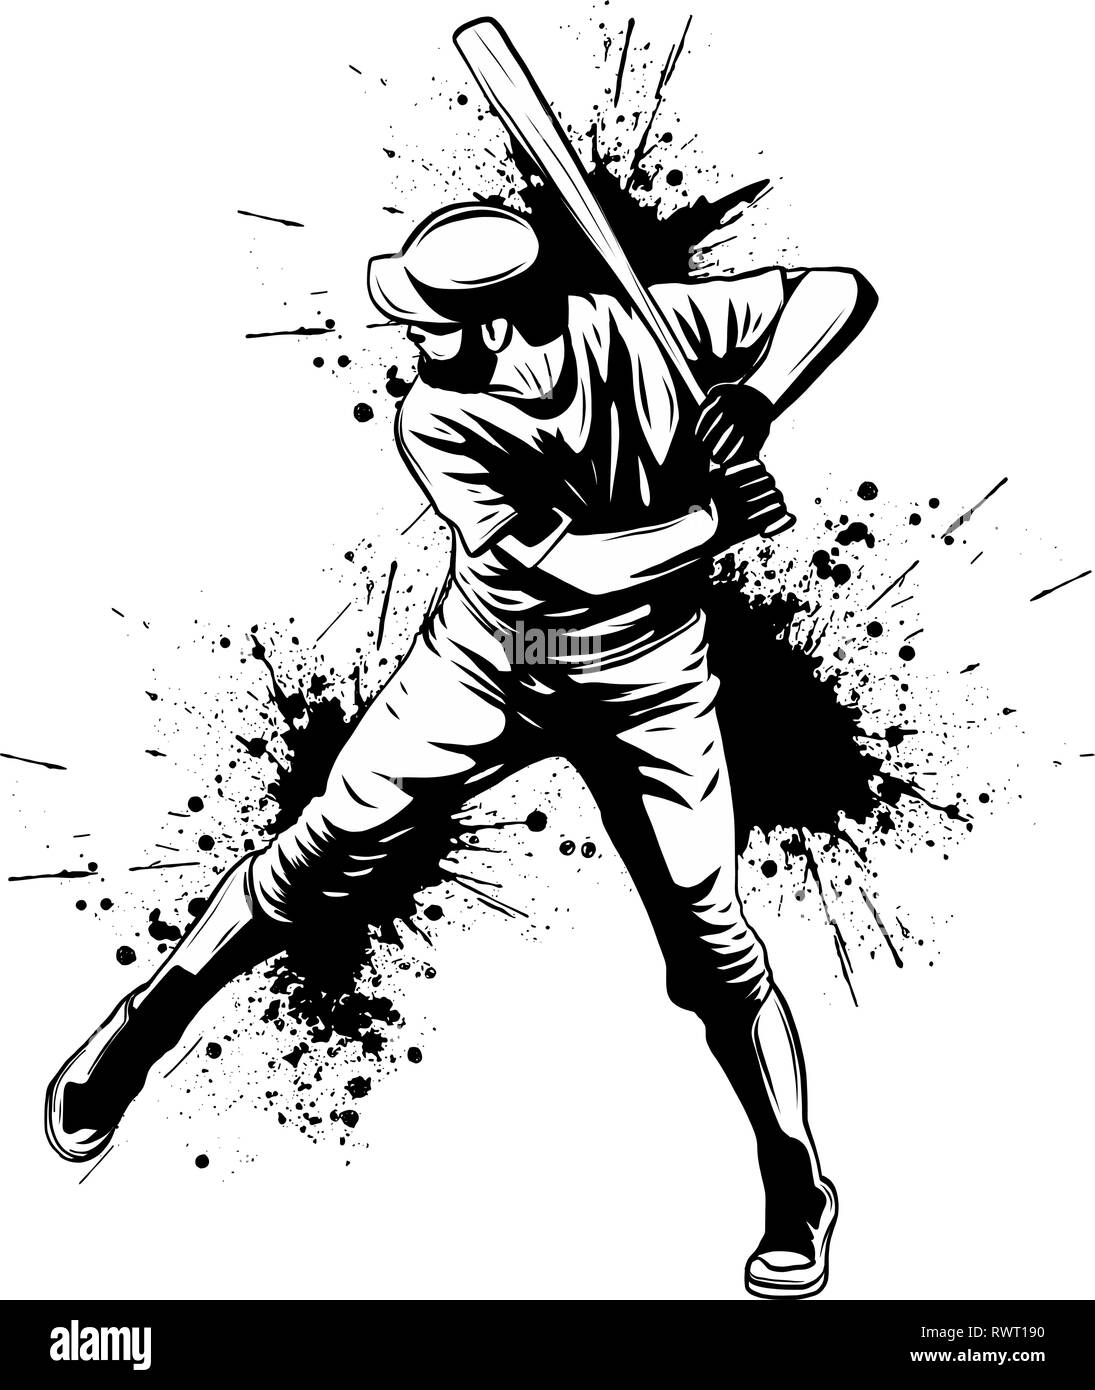 Joueur de baseball, hitter balançant avec bat, résumé vecteur isolé silhouette, dessin à l'encre Illustration de Vecteur